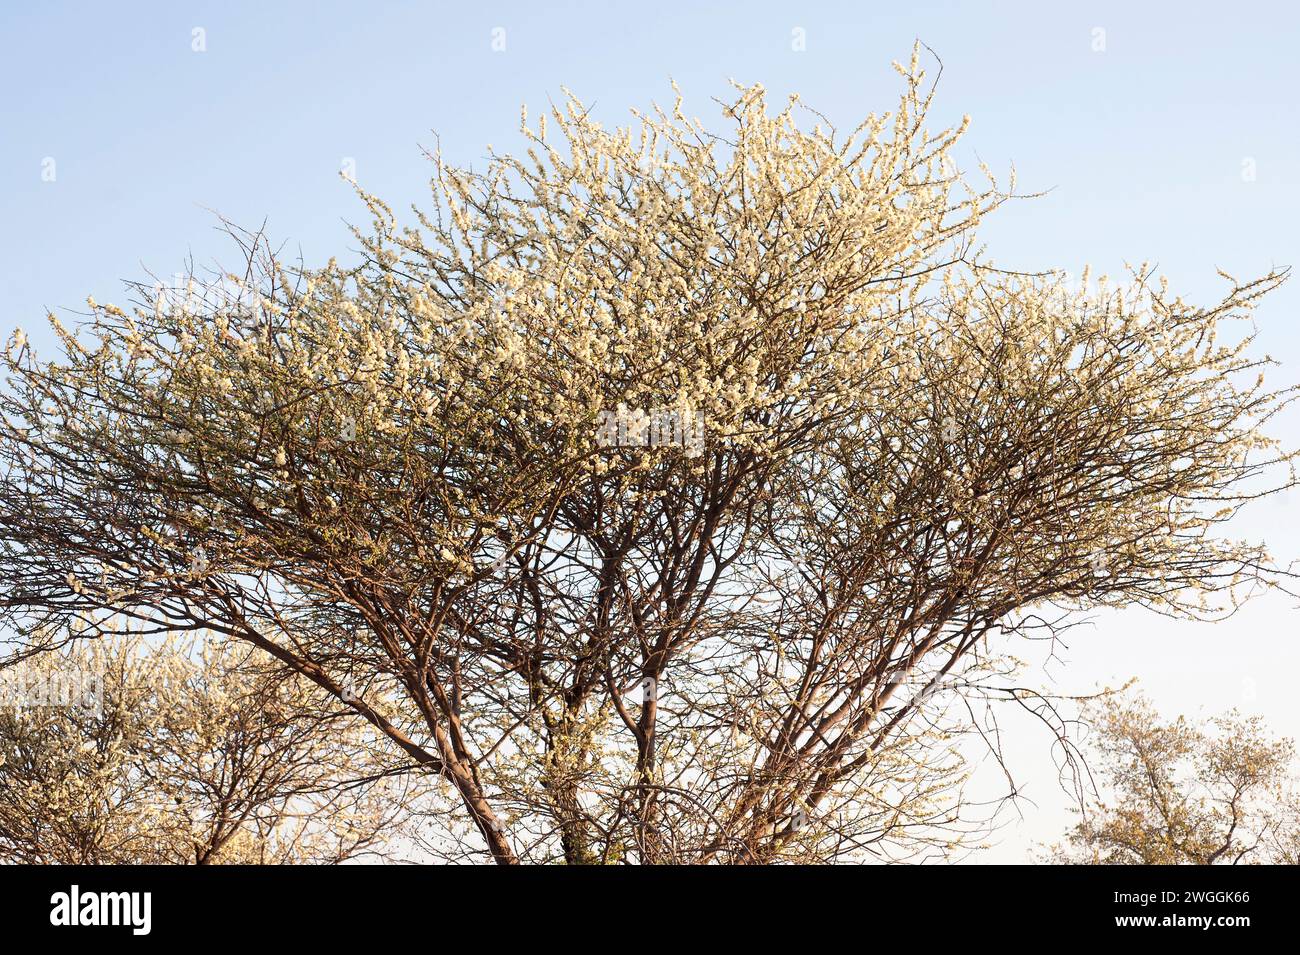 L'épine noire (Acacia mellifera ou Senegalia mellifera) est un arbuste épineux ou un petit arbre originaire d'Afrique orientale et de la péninsule arabique. Cette photo était Tak Banque D'Images